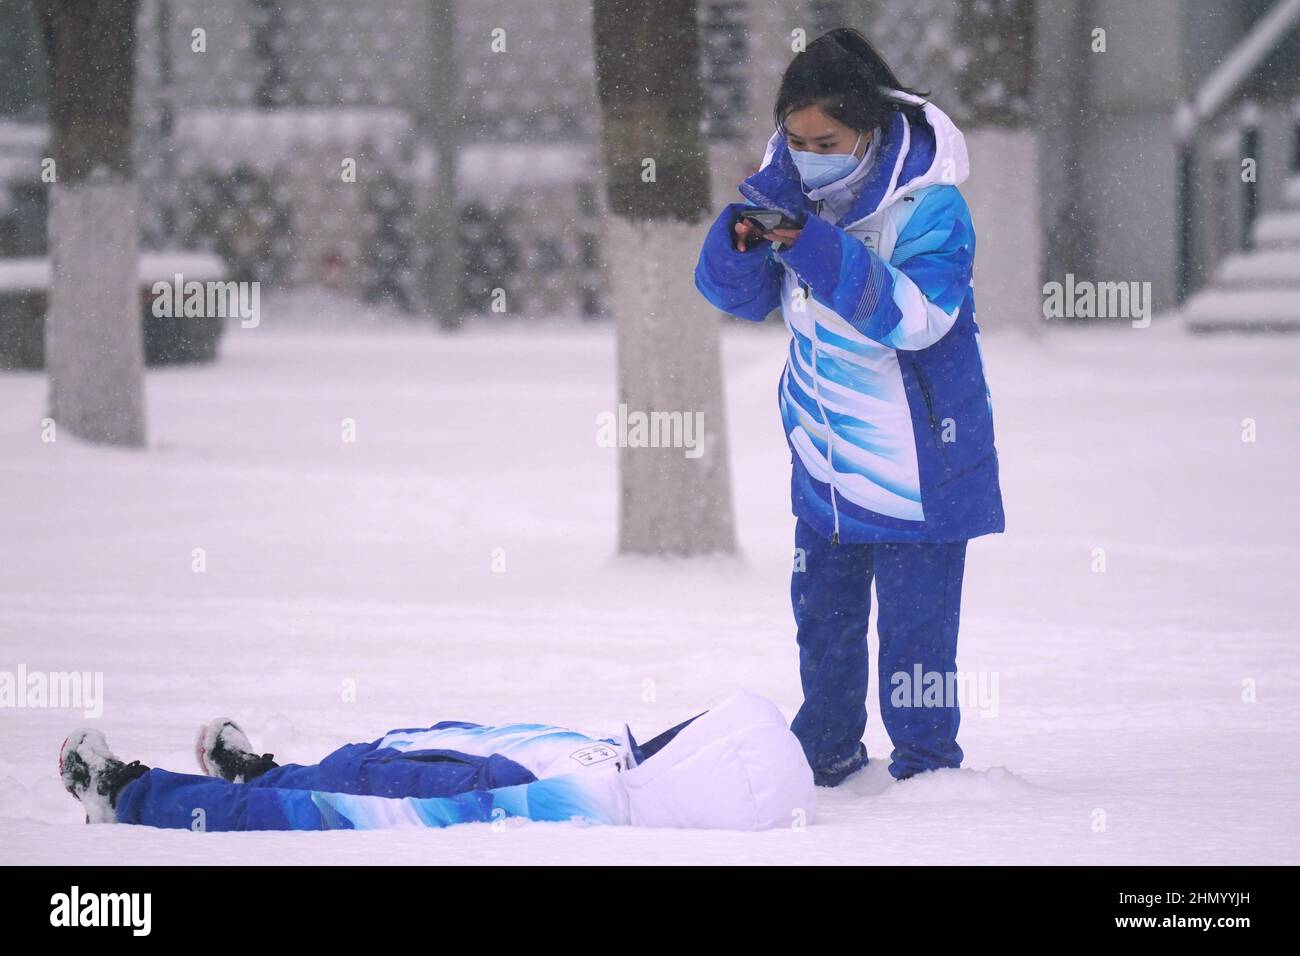 Olympische Freiwillige machen Fotos, die während eines starken Schneefalls bei den Olympischen Winterspielen in Peking 2022 am Sonntag, den 13. Februar 2022, im Schnee spielen. Foto von Richard Ellis/UPI Stockfoto